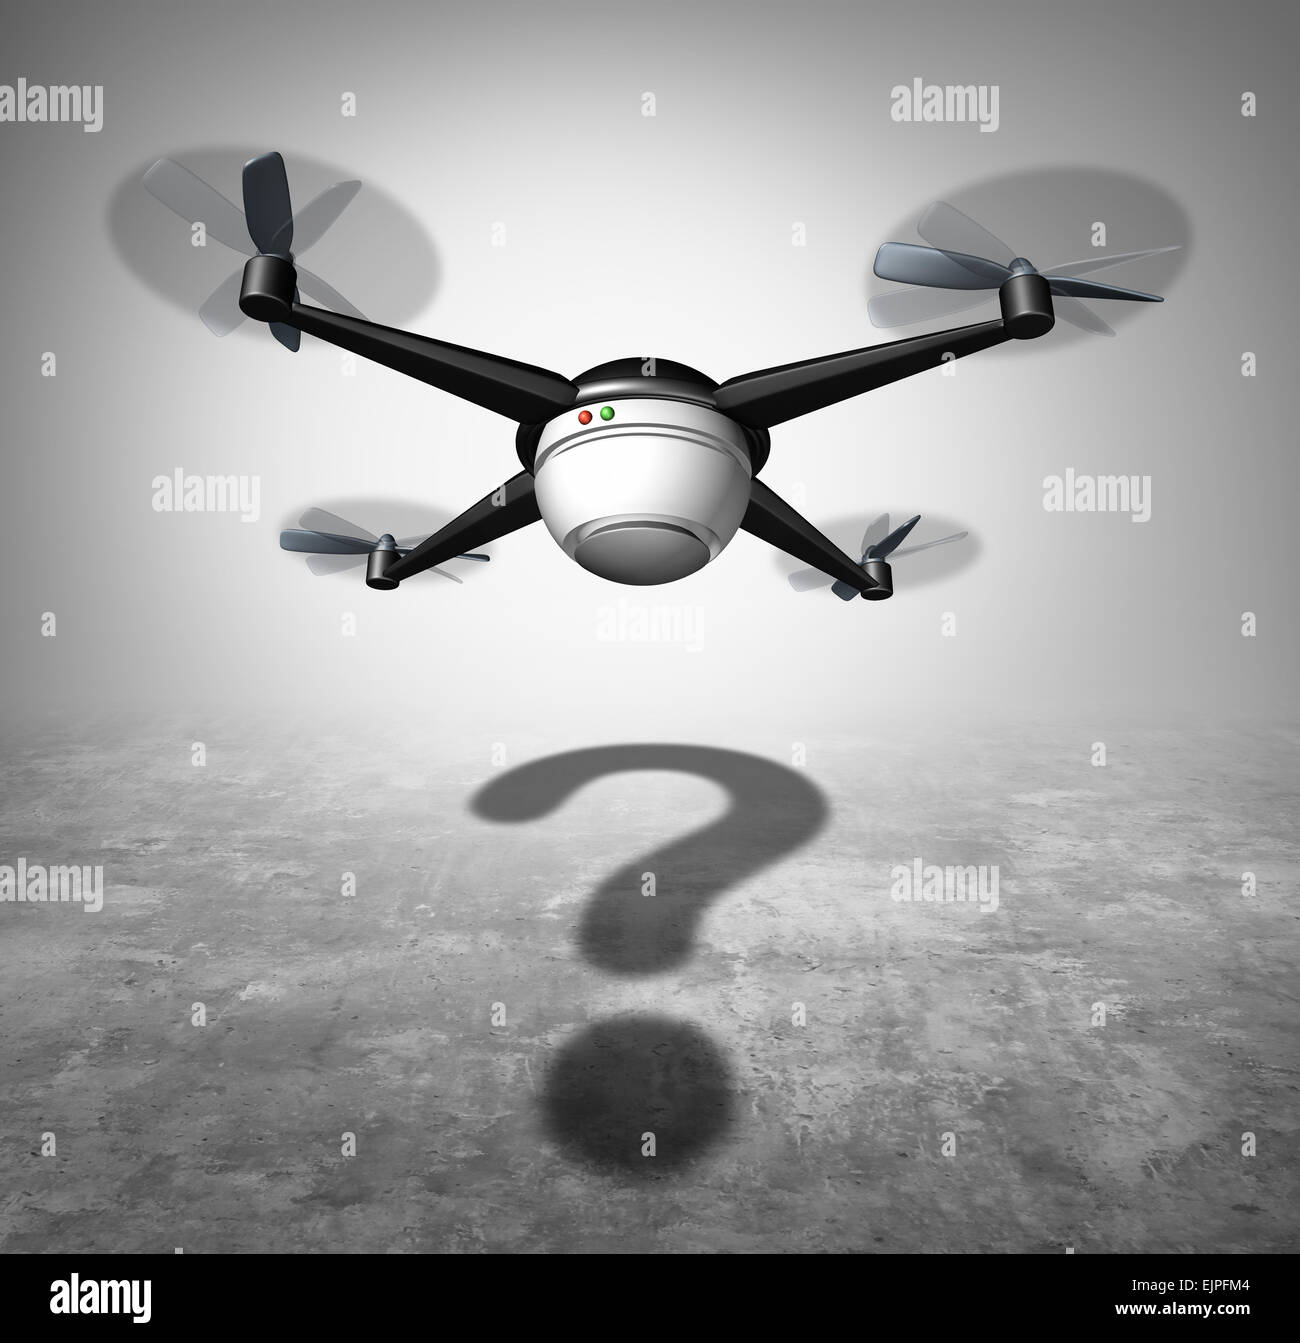 Drone questione e drone in volo con un cast ombra conformata come un punto interrogativo come un simbolo per la nuova sorveglianza e tecnologia di spedizione delle questioni sociali. Foto Stock